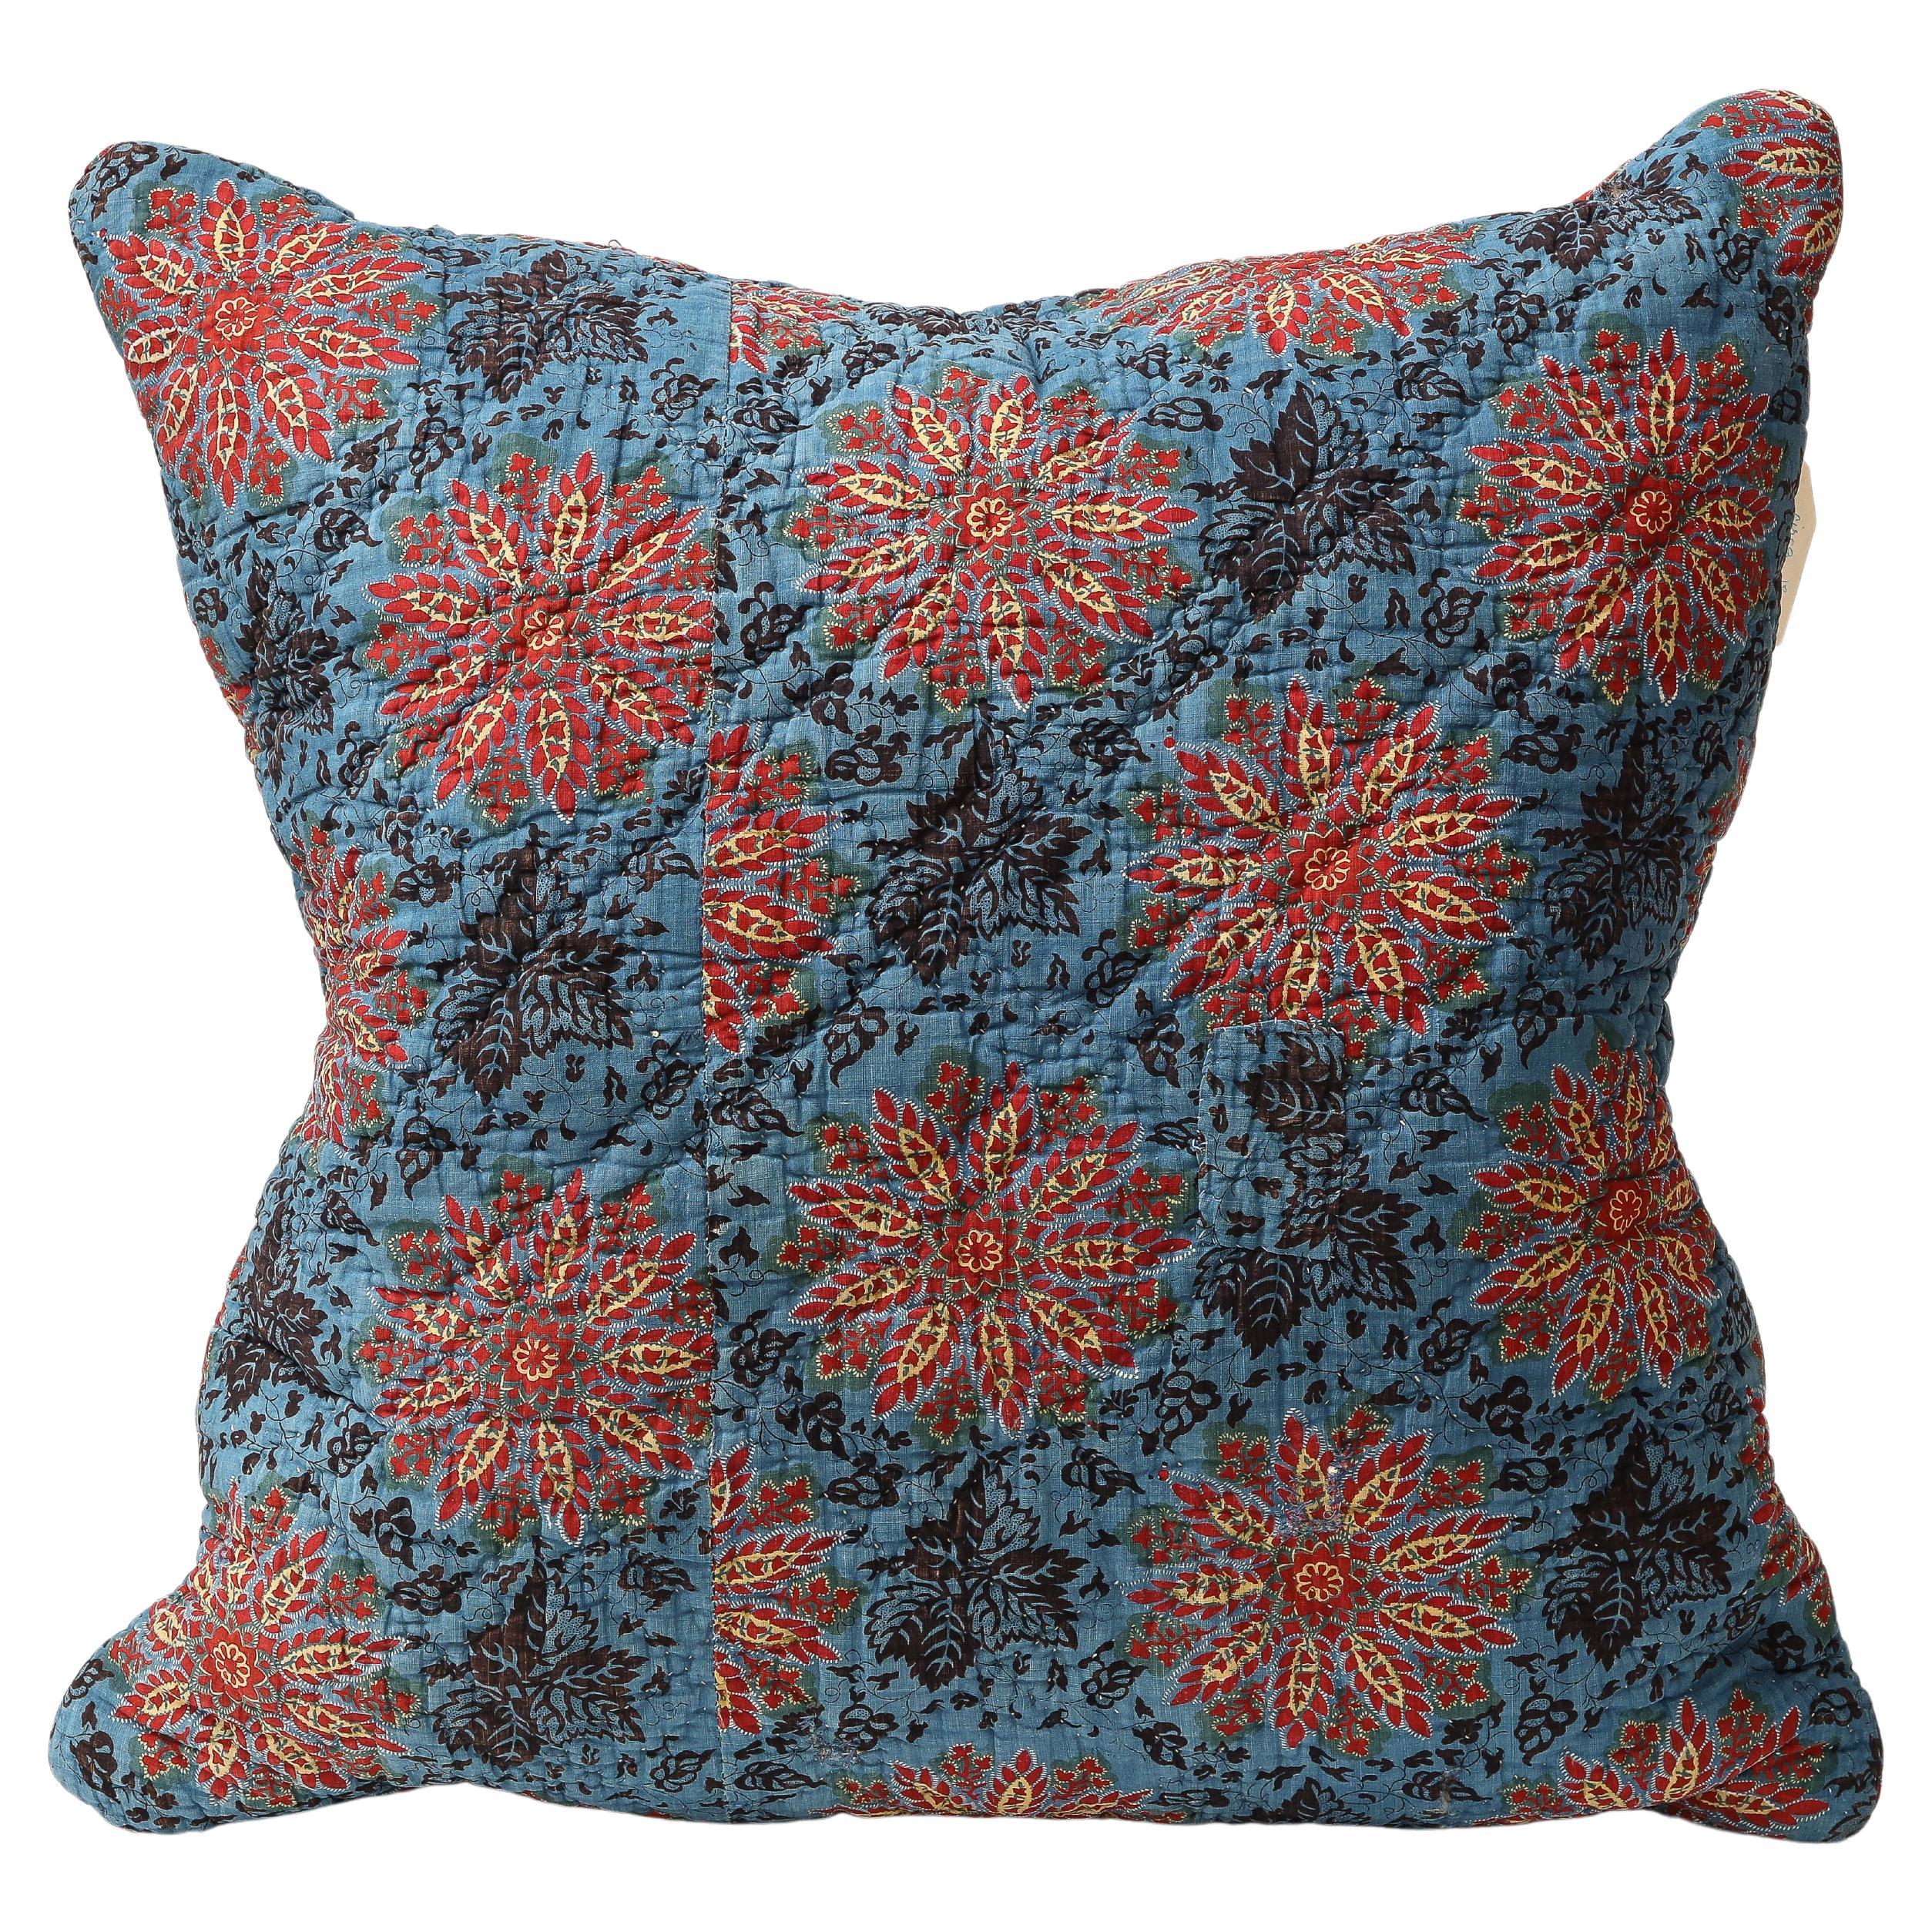 Coussin en coton imprimé de fleurs bleues, rouges et jaunes, 19ème C. Textile